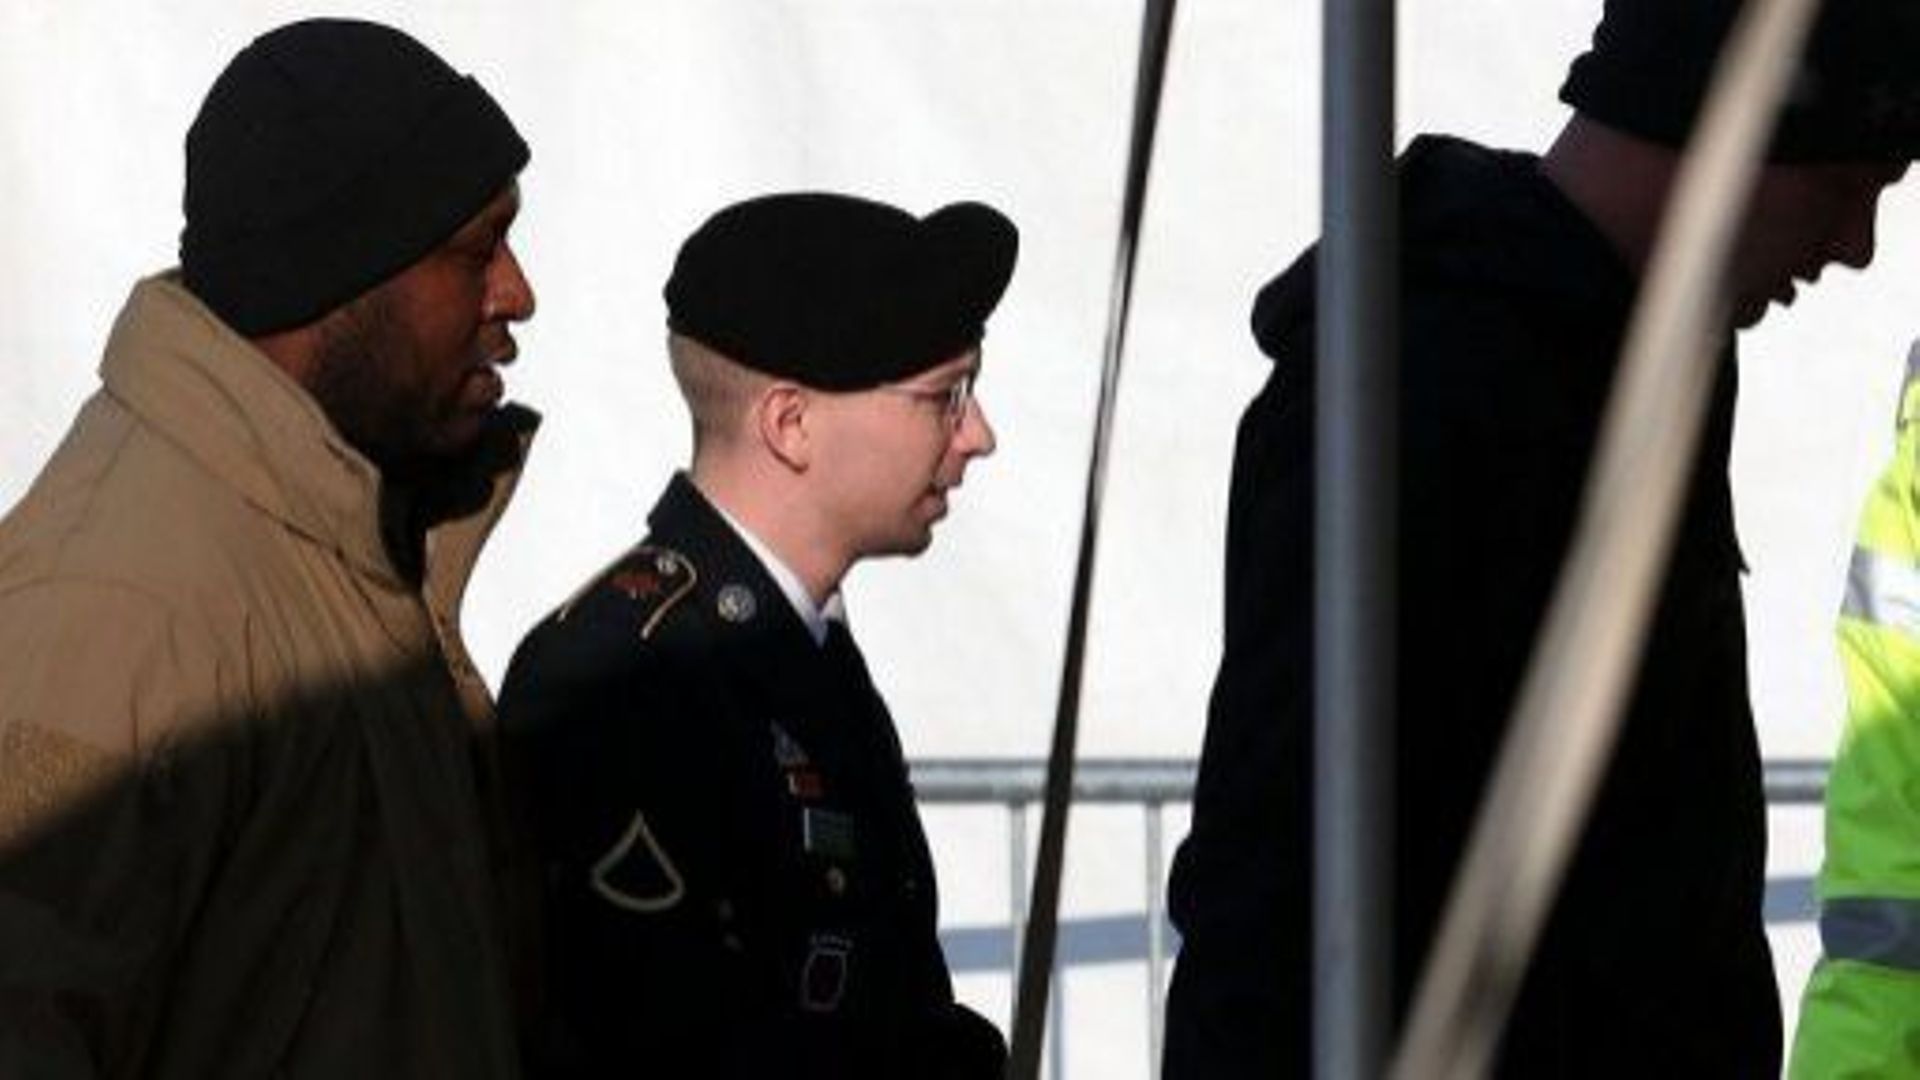 Le soldat américain Bradley Manning, lors d'une audience, le 28 novembre 2012 à Fort Meade dans le Maryland